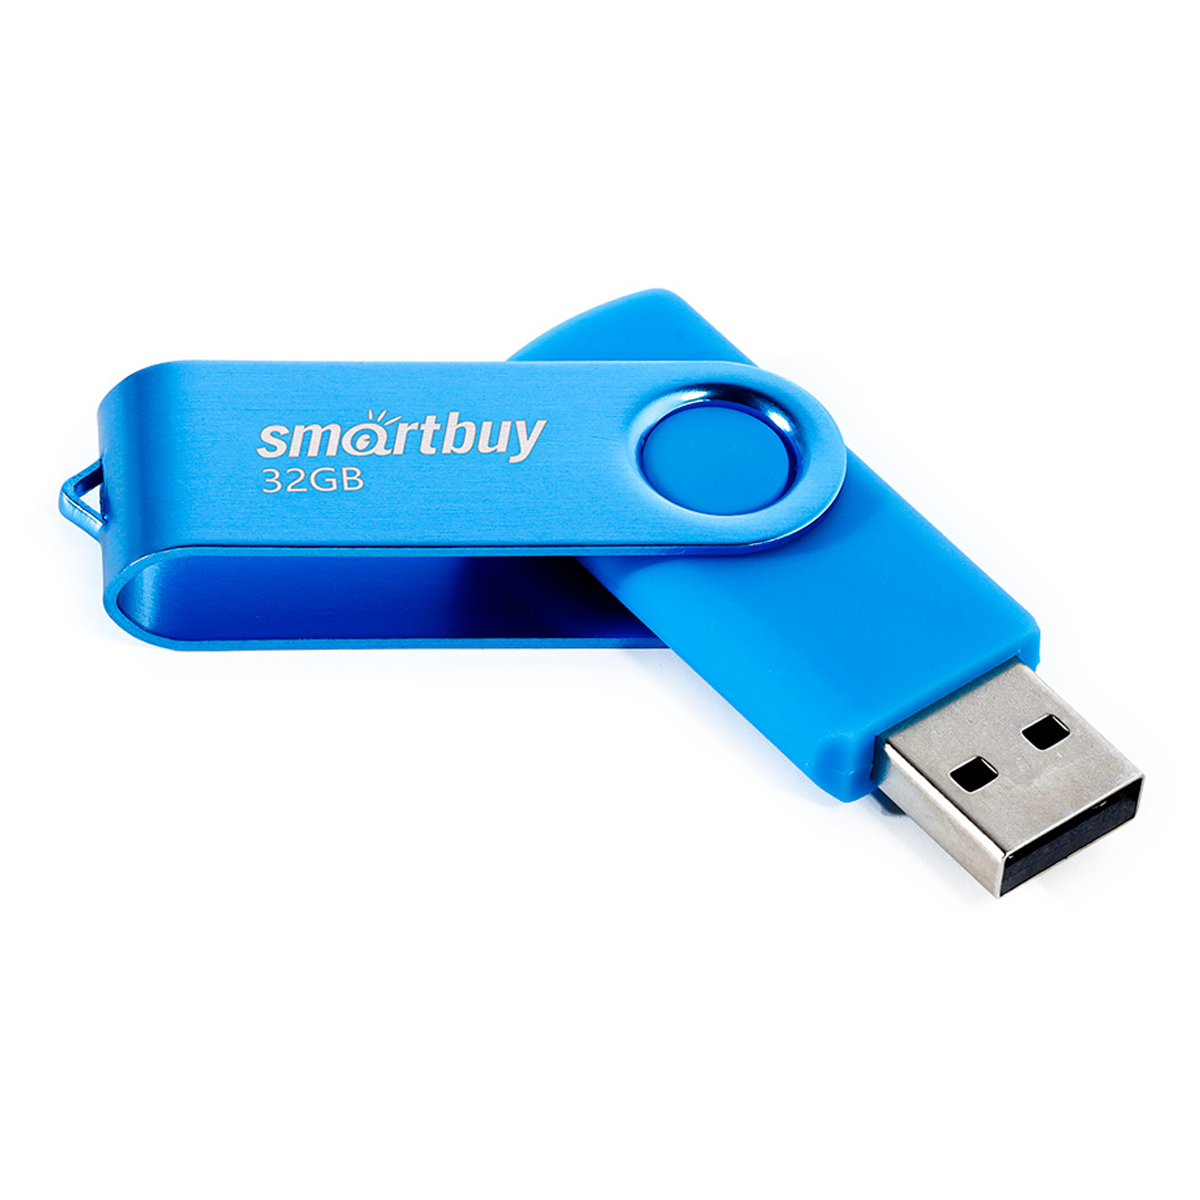  Smart Buy "Twist" 32GB, USB 2.0 Flash Drive,  